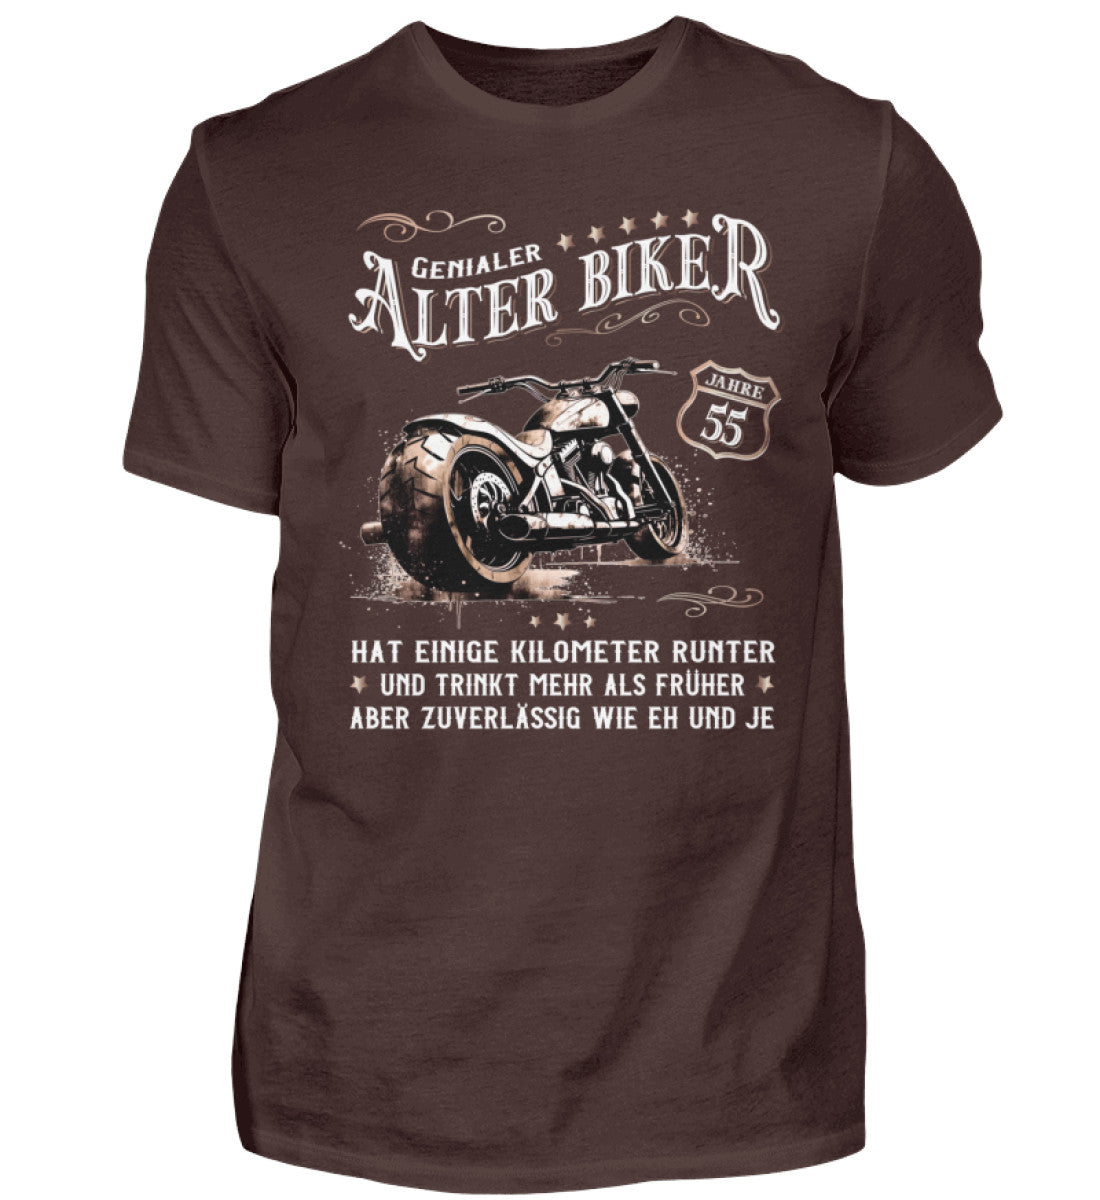 Ein Biker T-Shirt zum Geburtstag für Motorradfahrer von Wingbikers mit dem Aufdruck, Alter Biker - 55 Jahre - Einige Kilometer runter, trinkt mehr - aber zuverlässig wie eh und je - in braun.